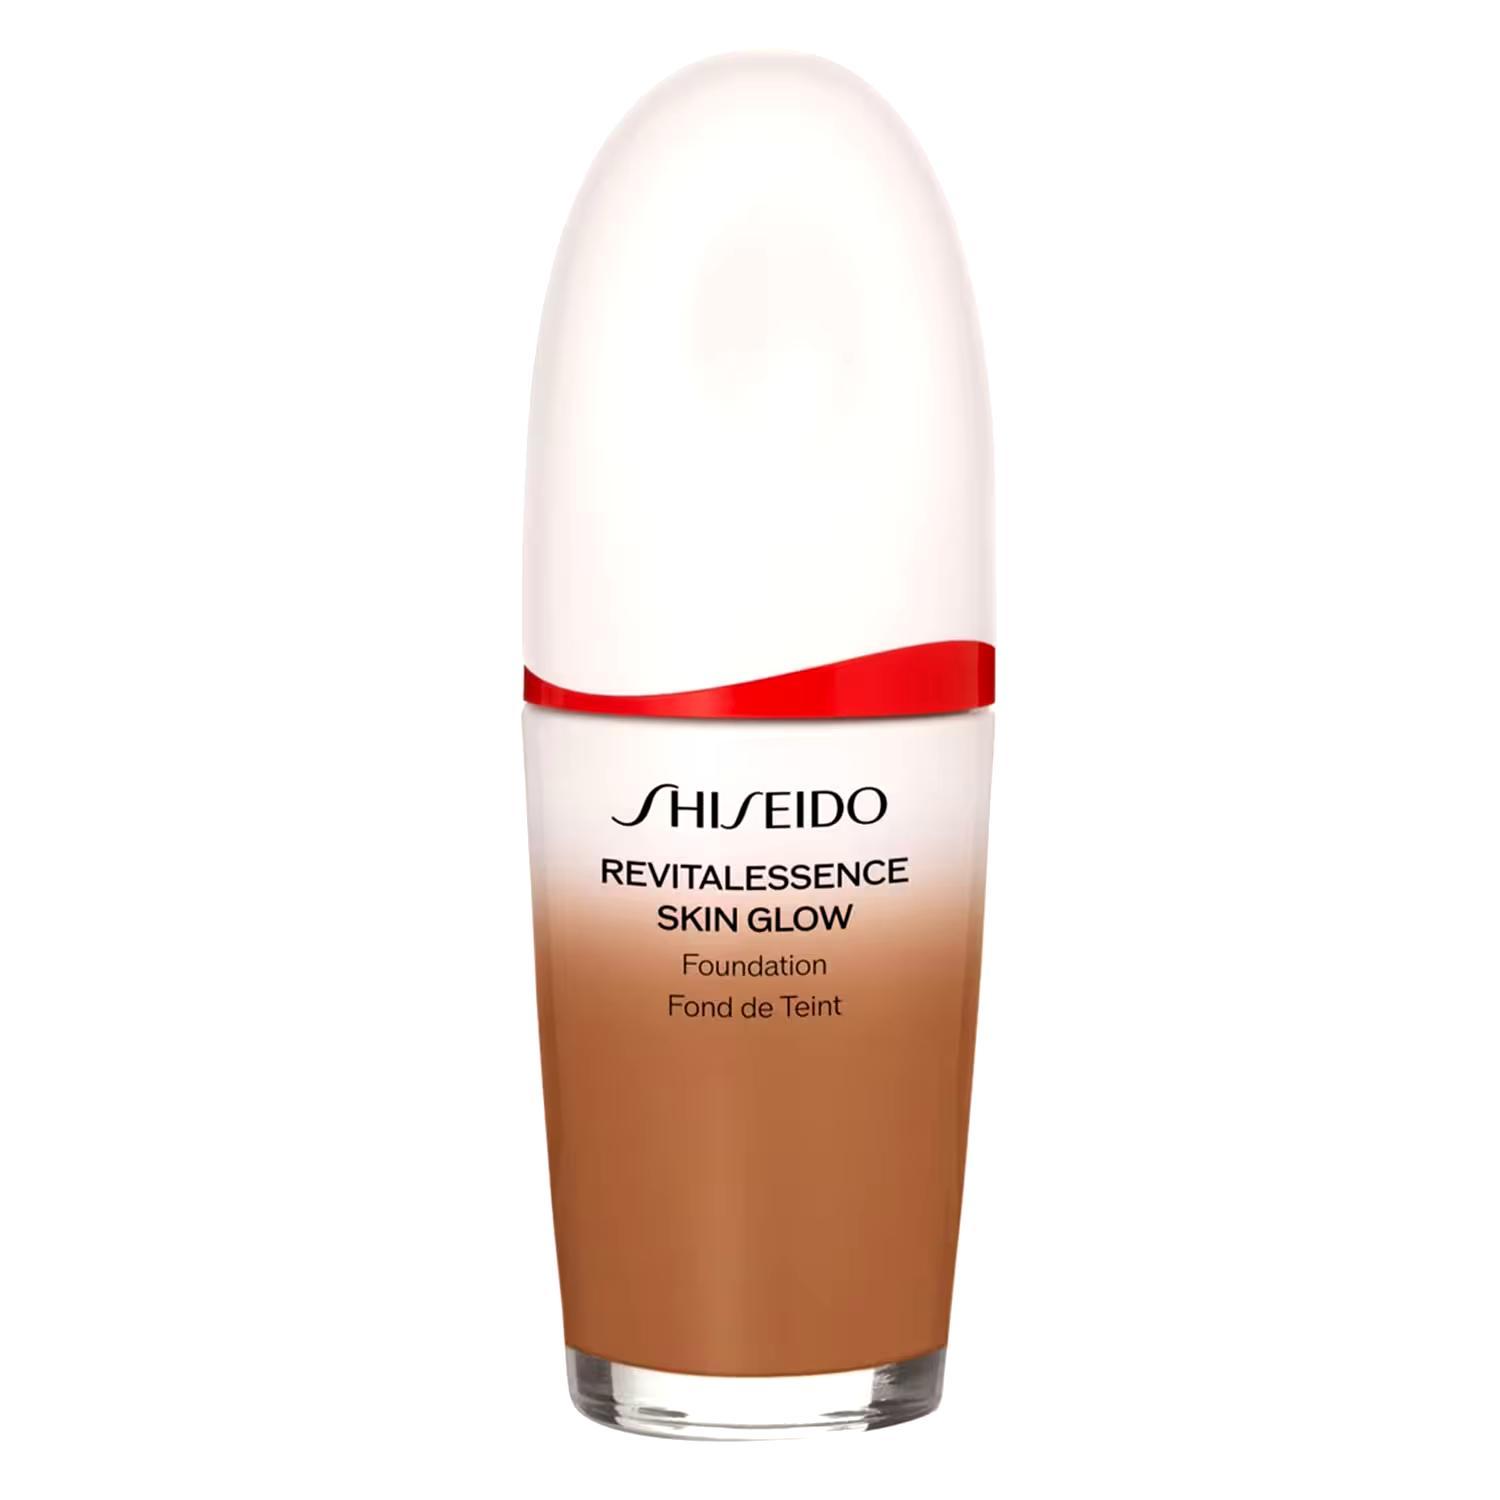 Shiseido Revitalessence Skin Glow Foundation, 430 Cedar